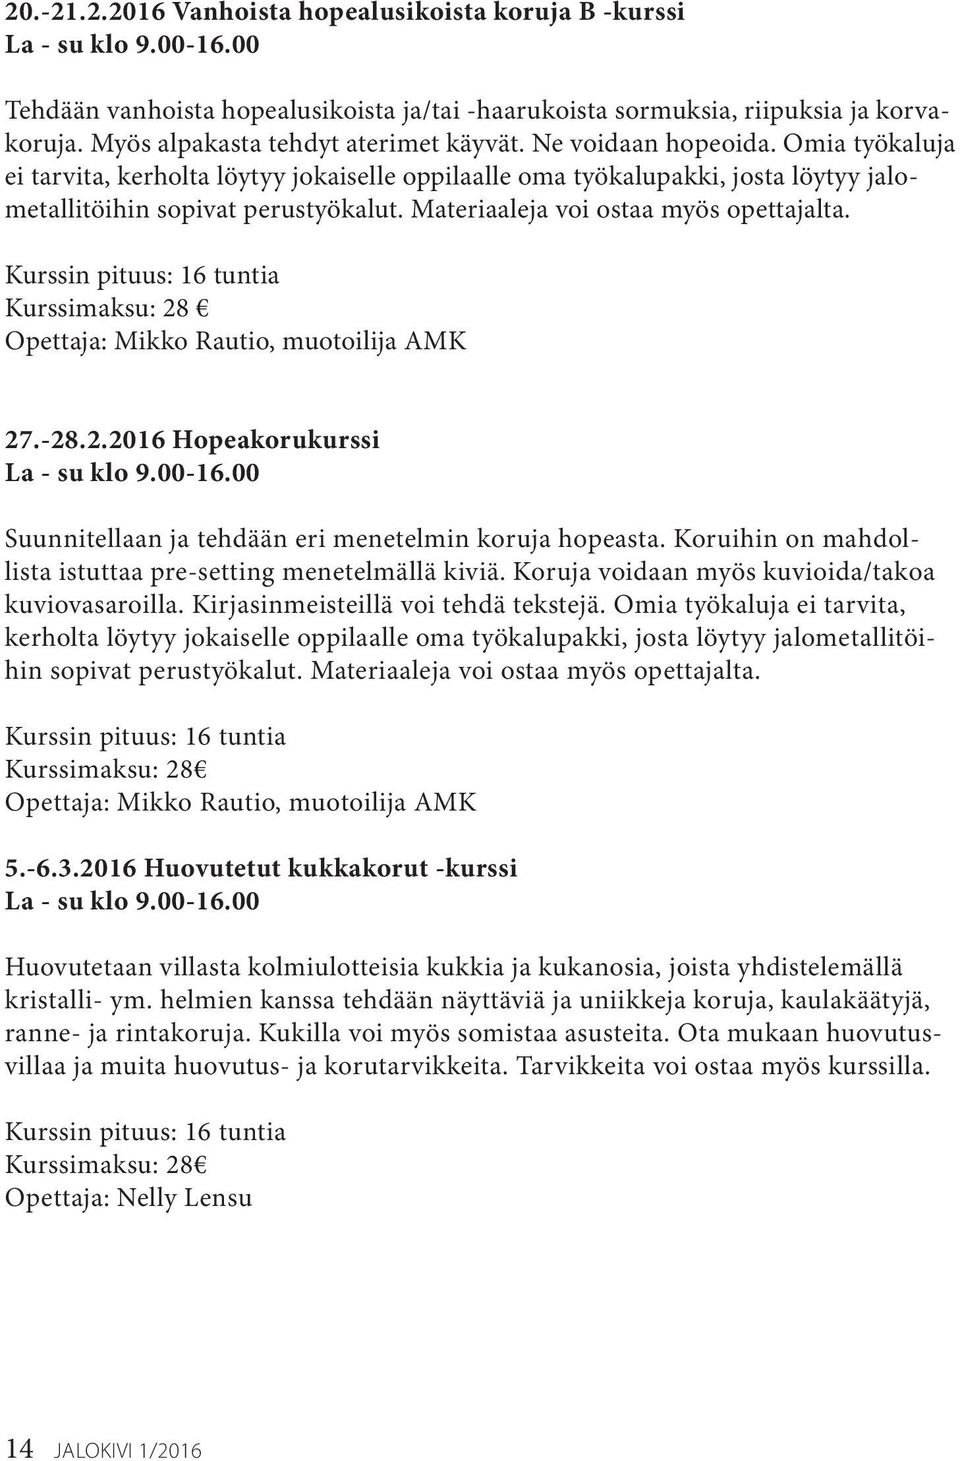 Materiaaleja voi ostaa myös opettajalta. Kurssimaksu: 28 Opettaja: Mikko Rautio, muotoilija AMK 27.-28.2.2016 Hopeakorukurssi La - su klo 9.00-16.